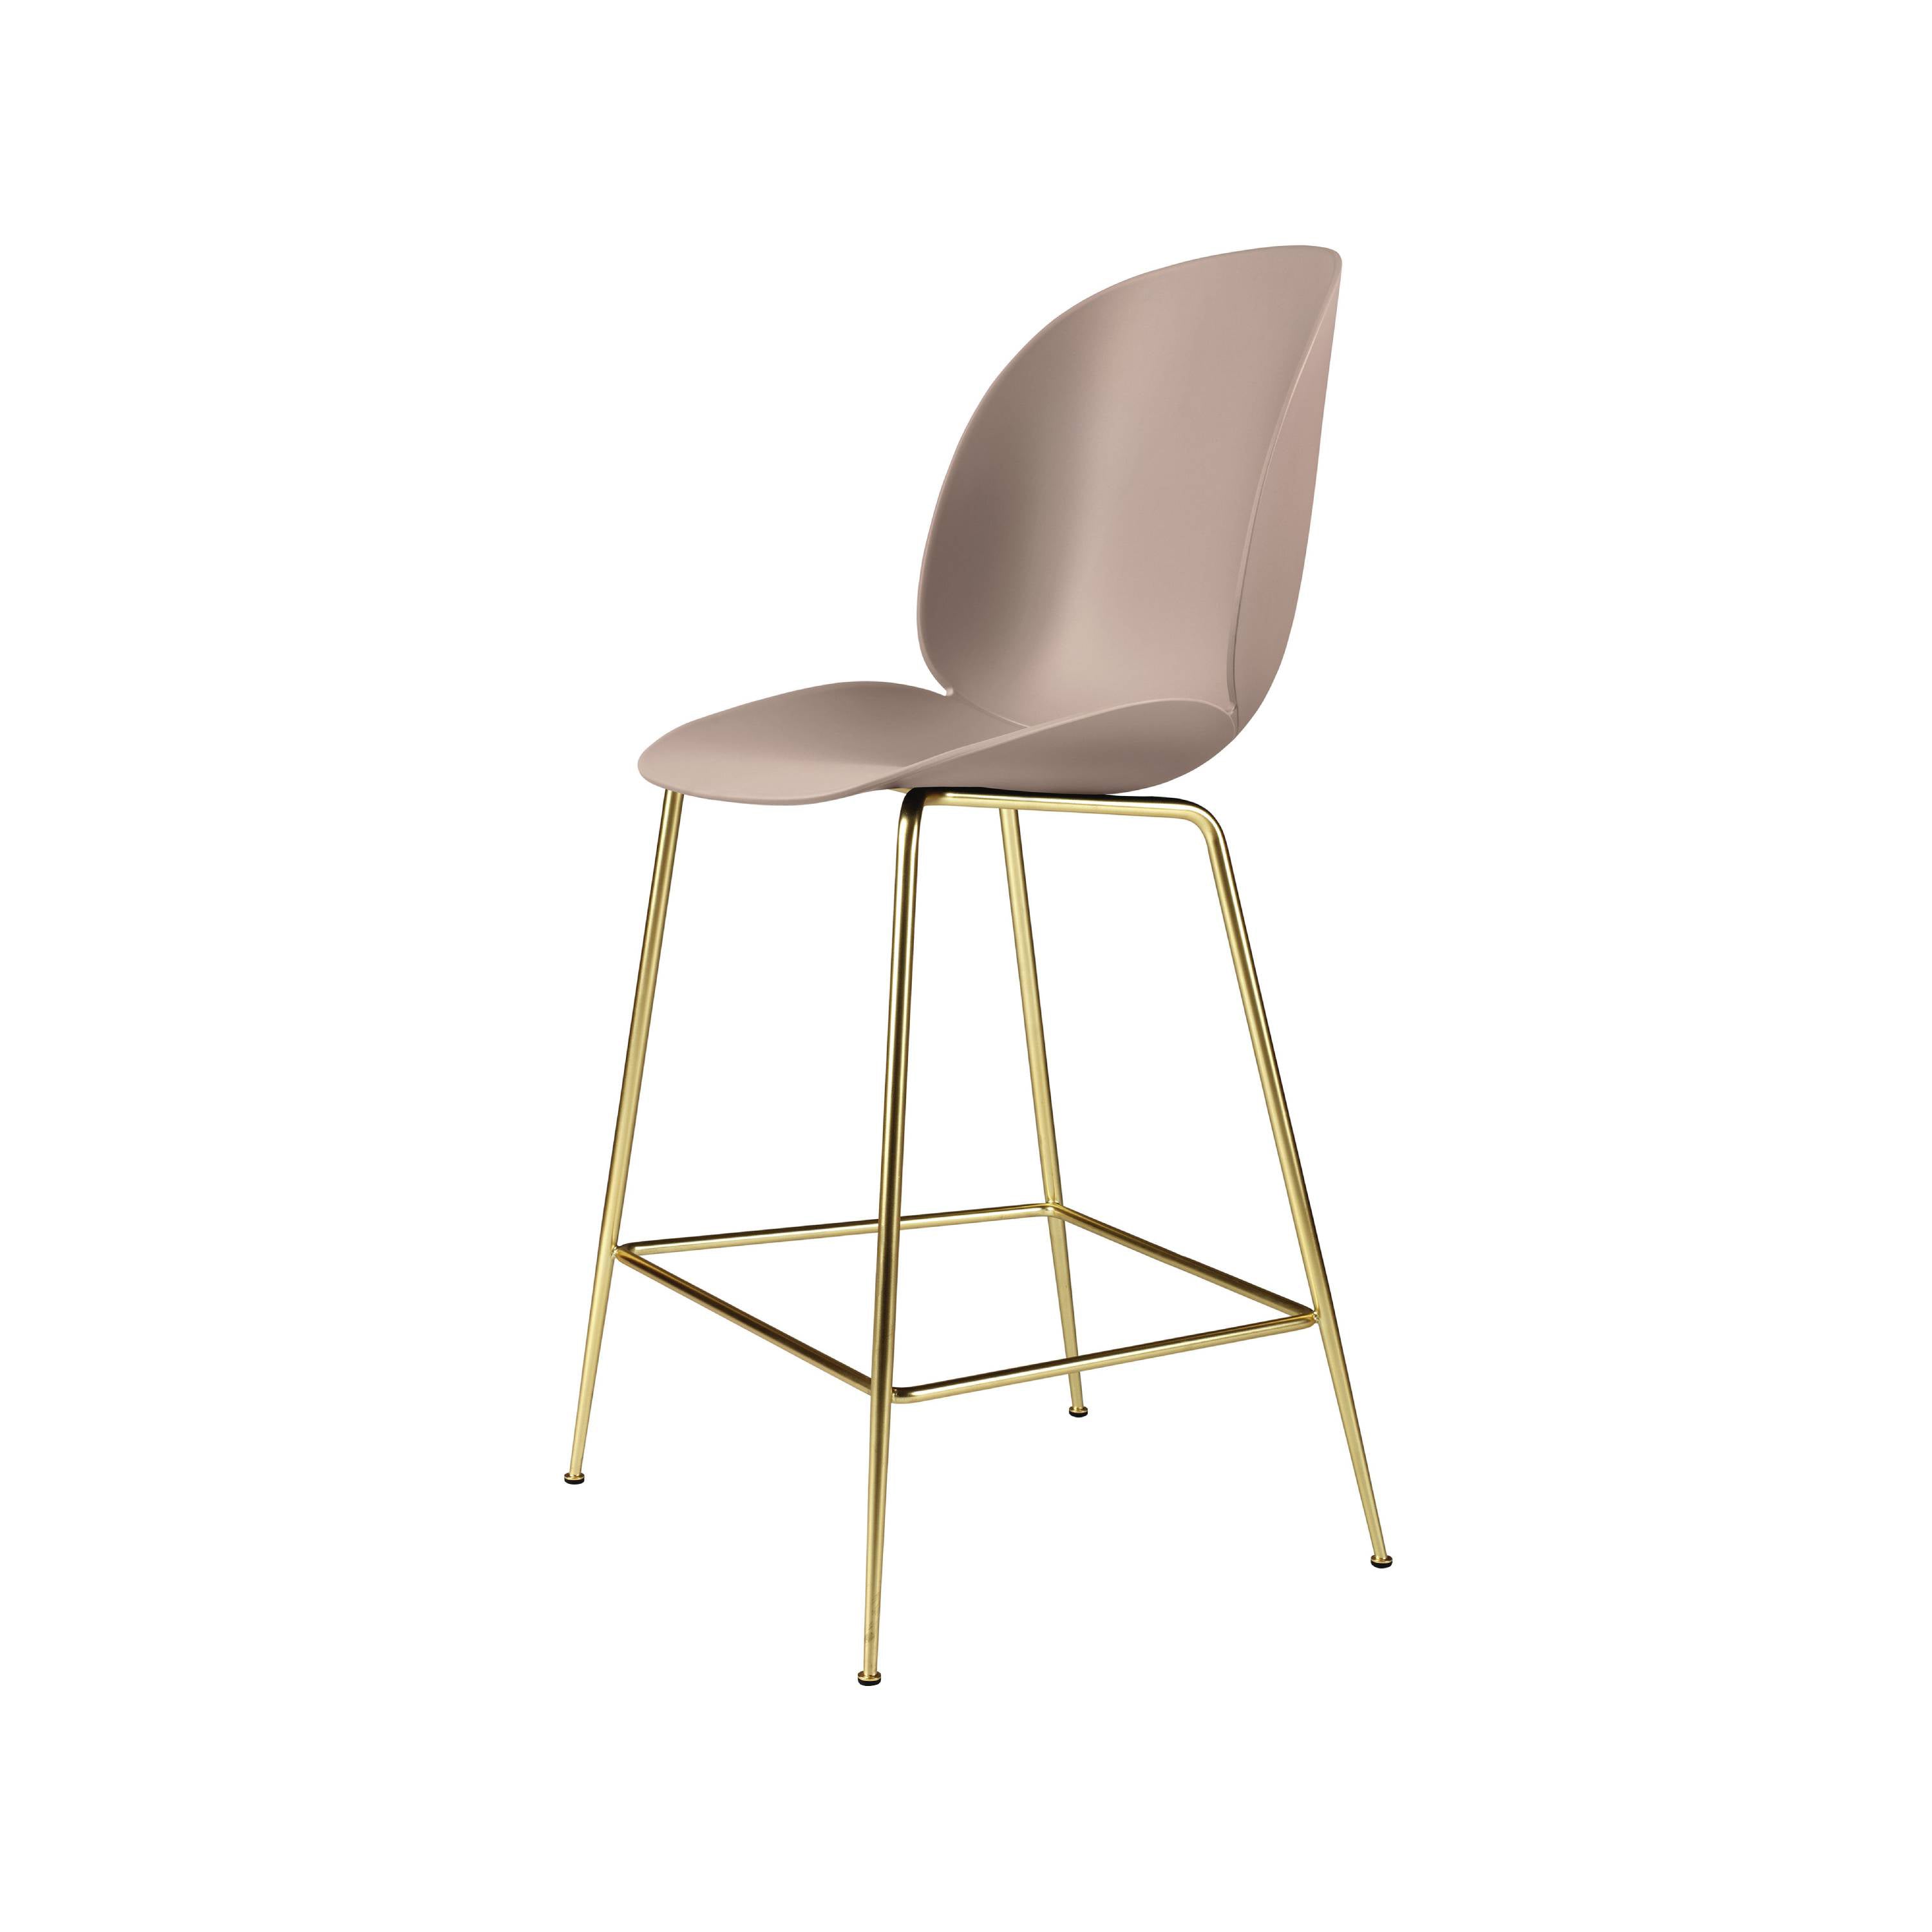 Beetle Bar + Counter Chair: Counter + Sweet Pink + Brass Semi Matt